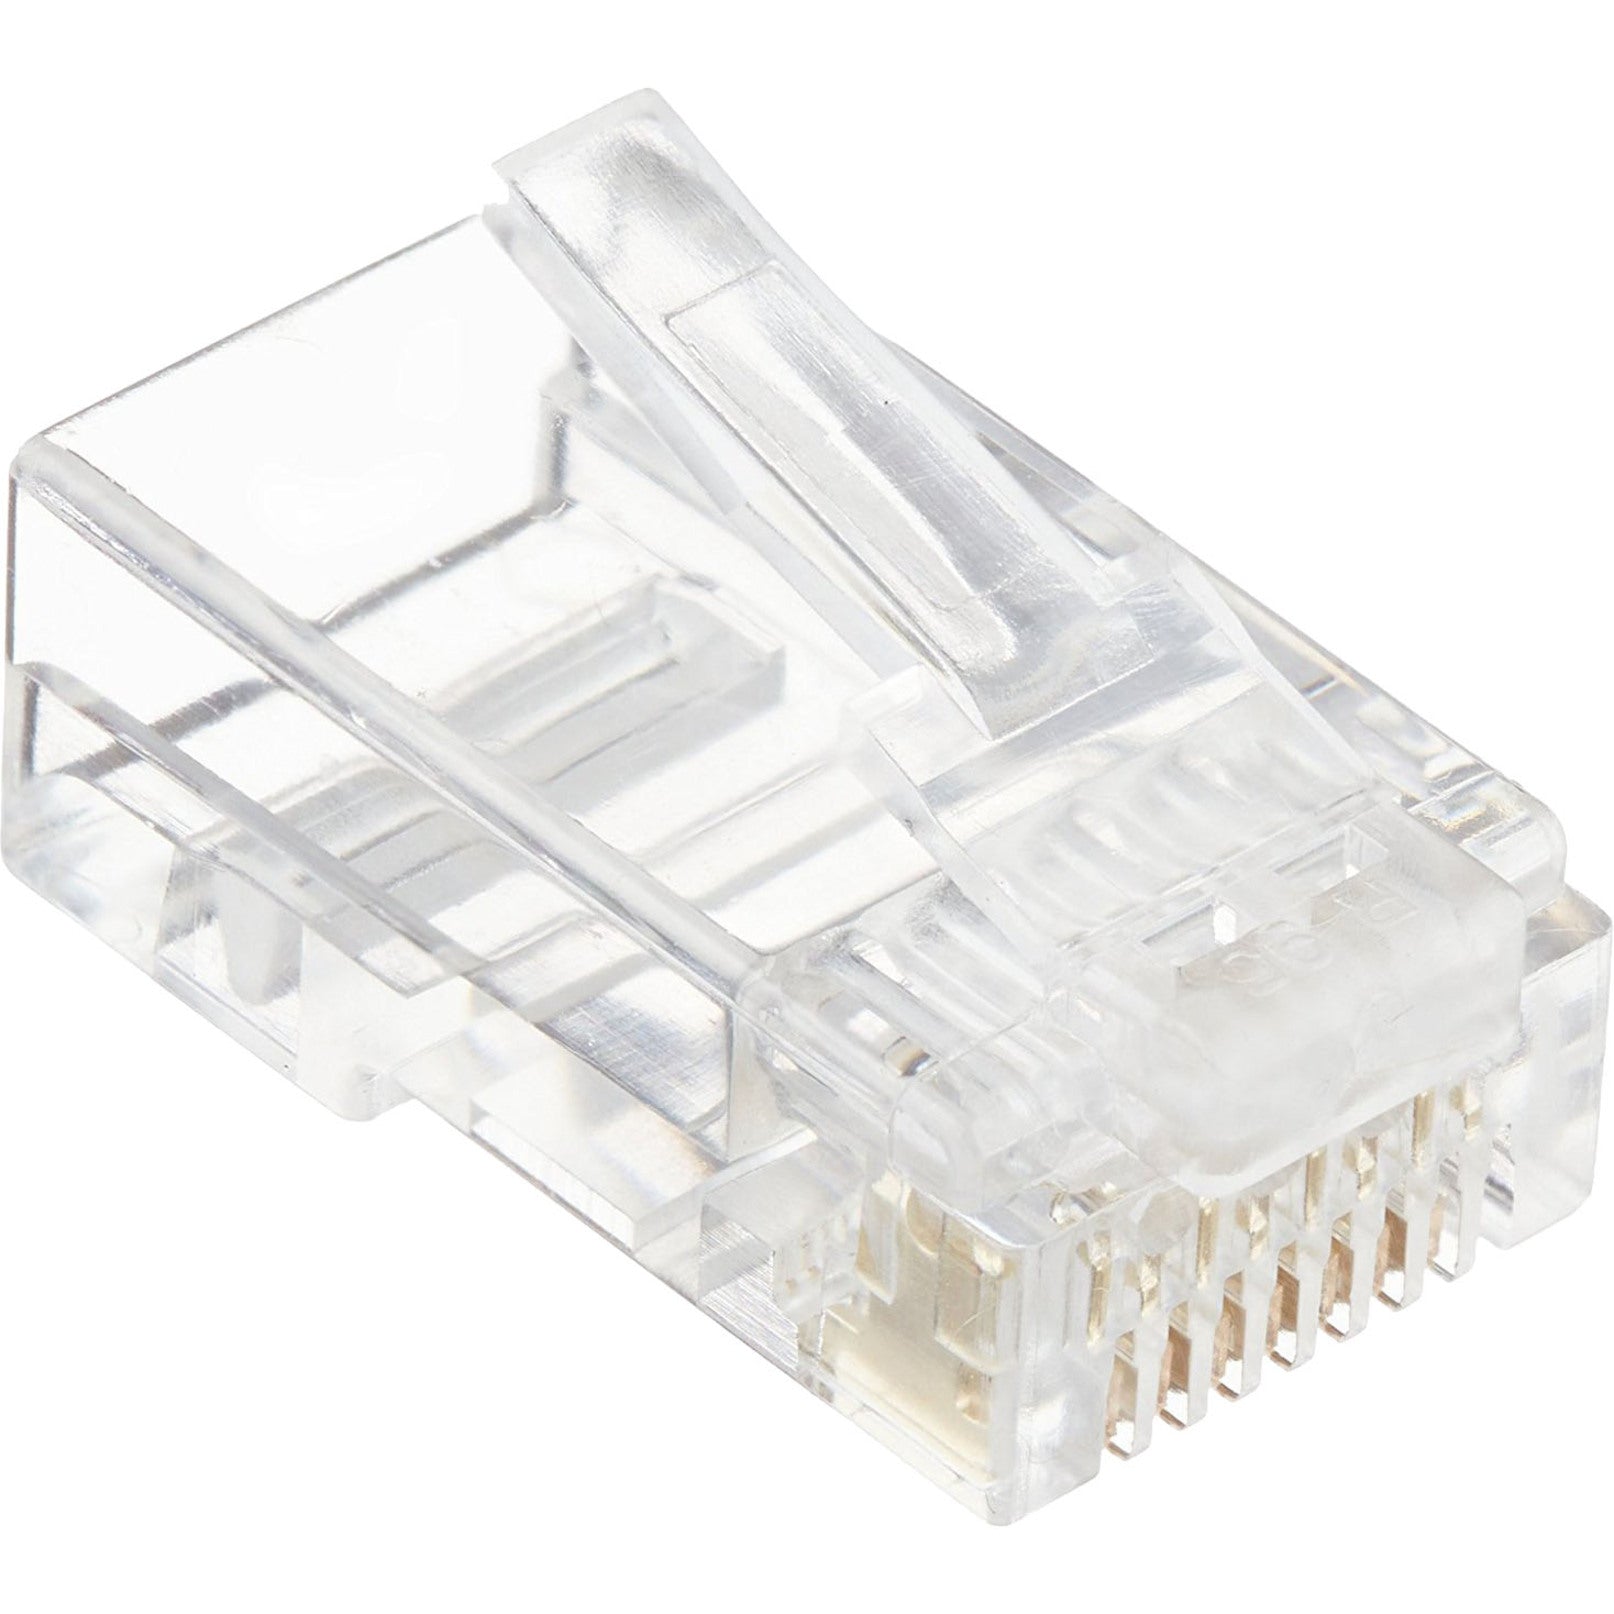 4XEM 4X1000PKC6 1000PK Cat6 RJ45 Ethernet Plugs/Connectors, Gold Plated, Clear, Lifetime Warranty